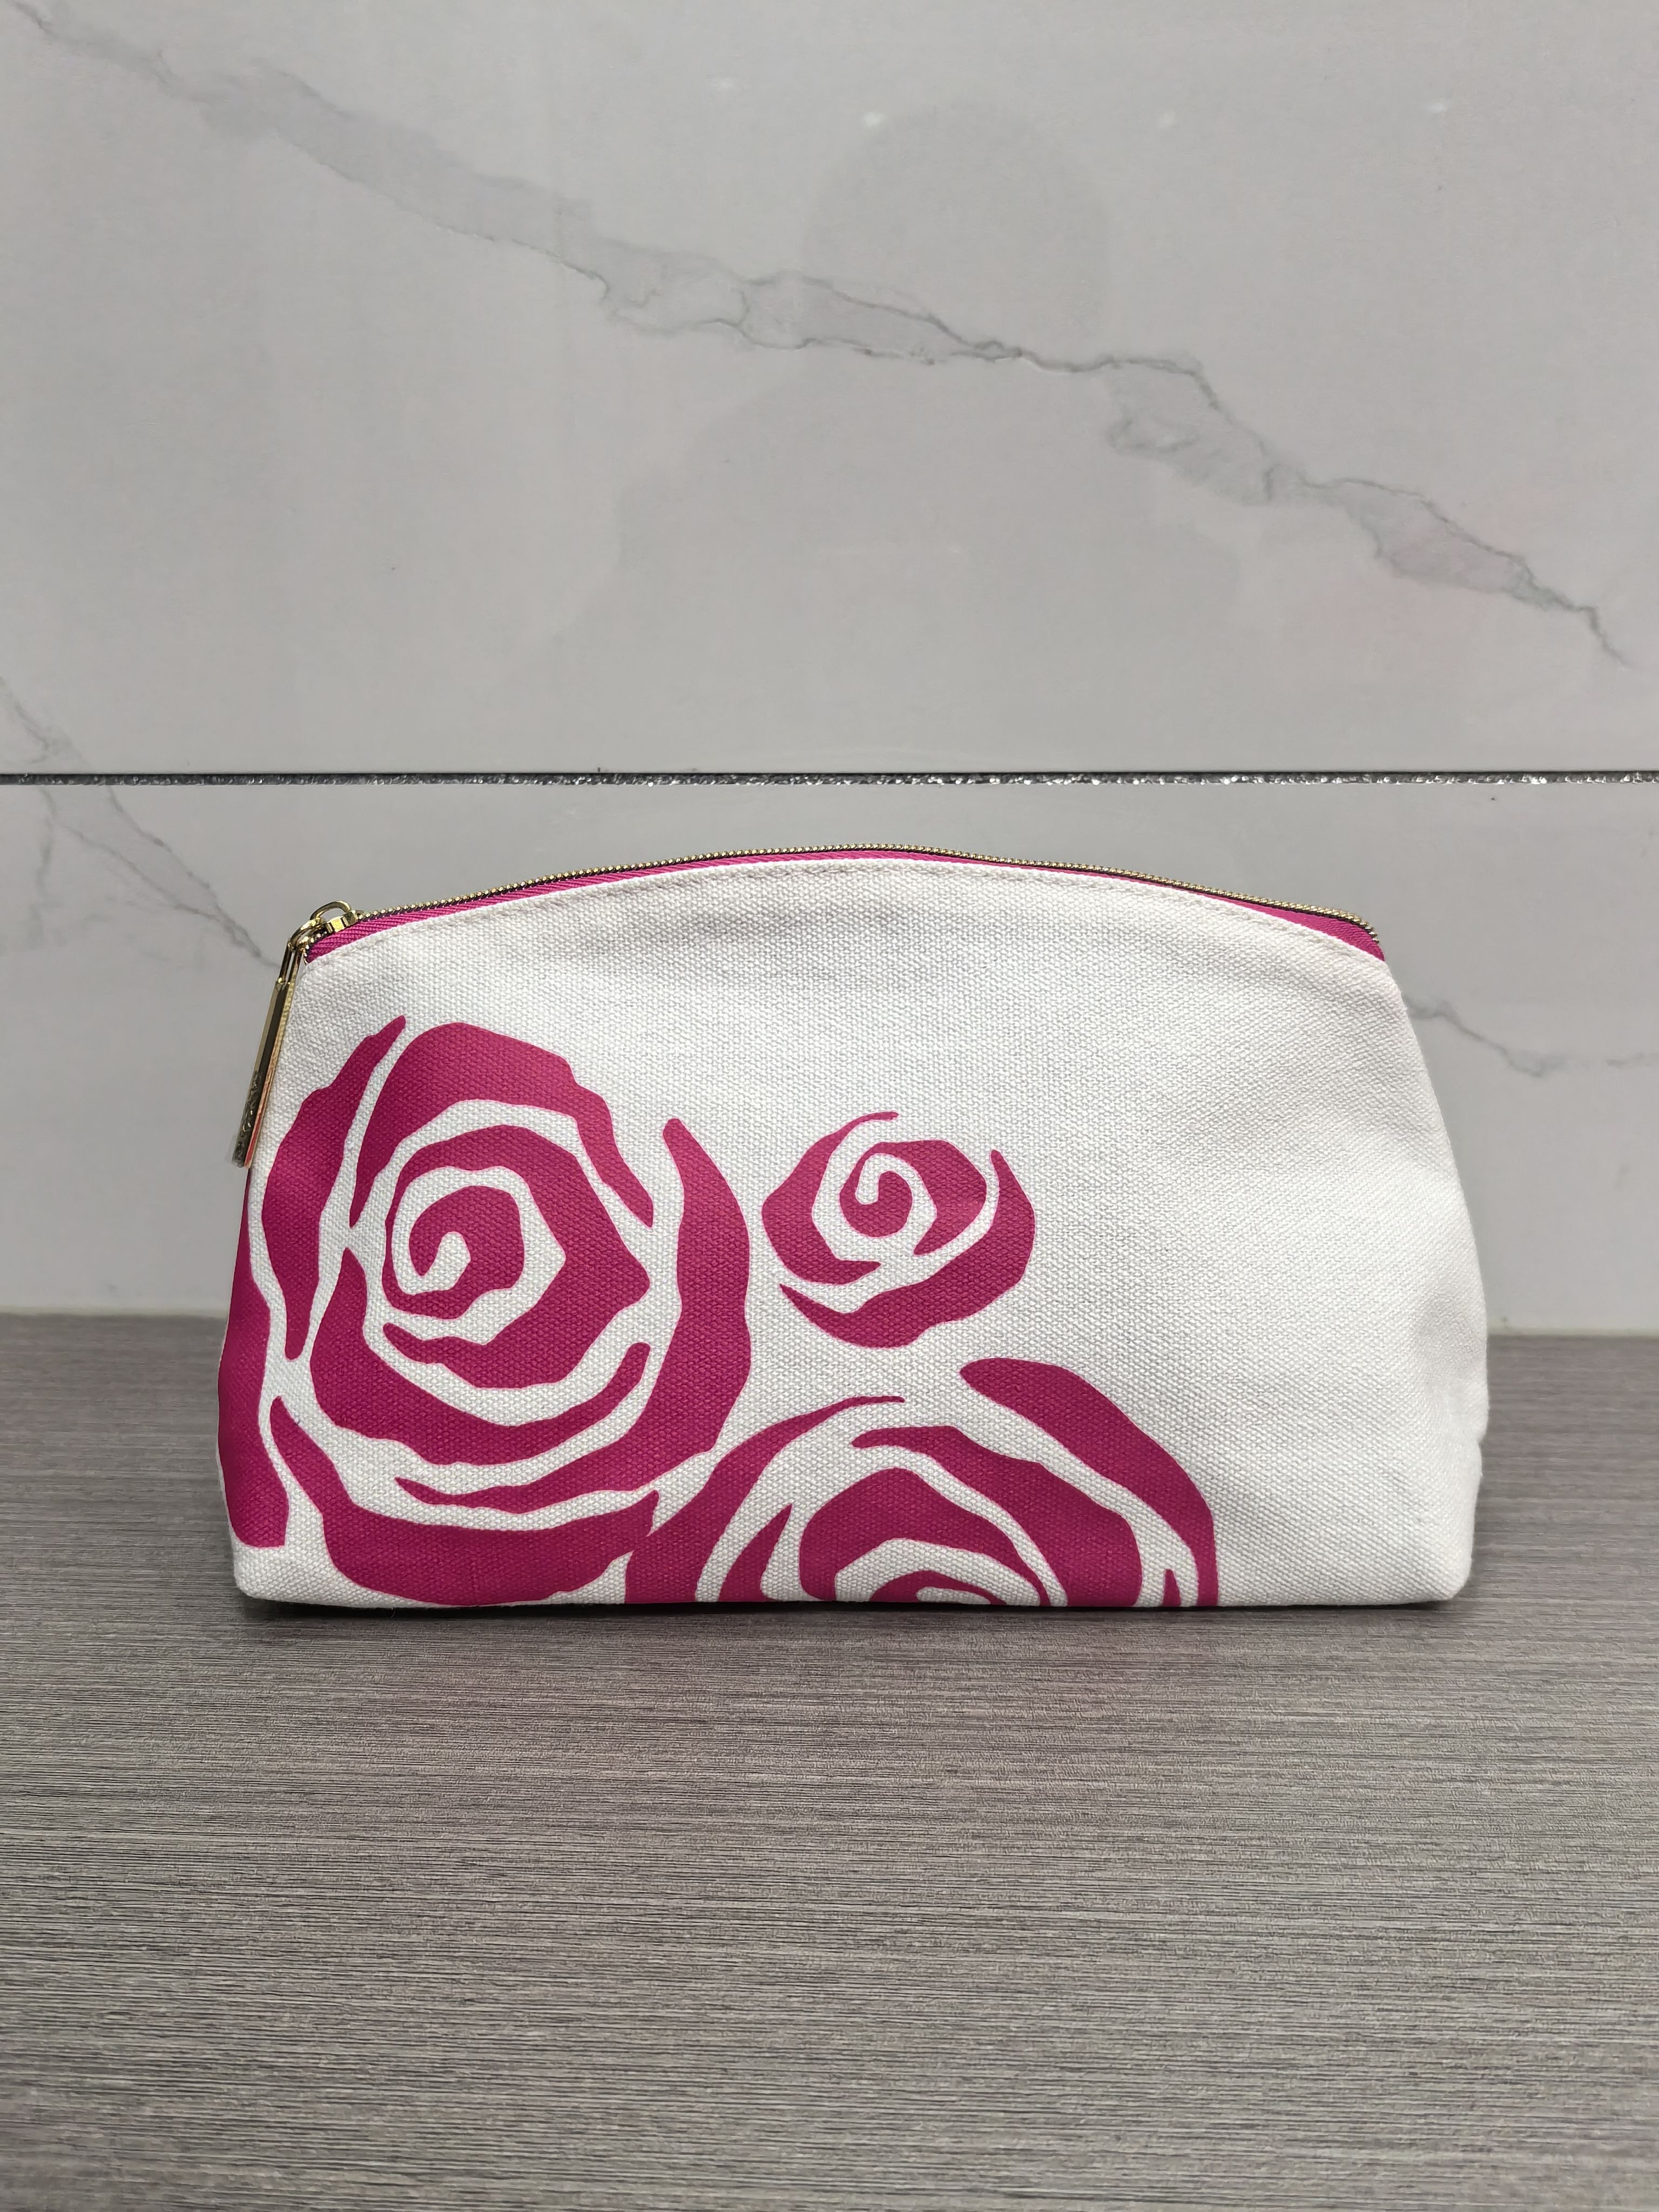 新款兰蔻赠品红玫瑰化妆包印花品大容量便携手拿包洗漱收纳